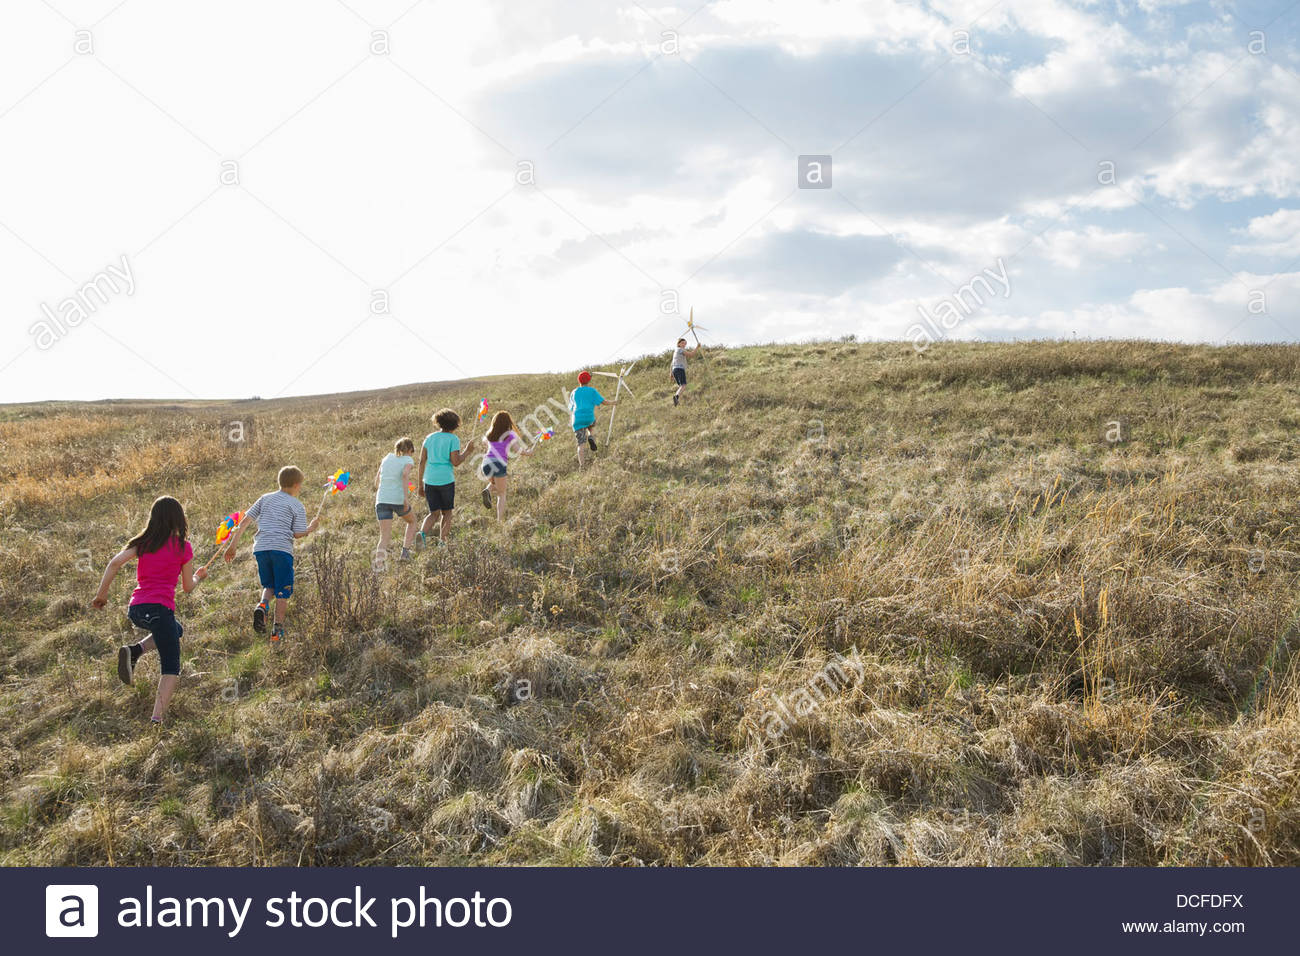 Los niños caminando cuesta arriba con molinetes y molinos de viento Foto de stock